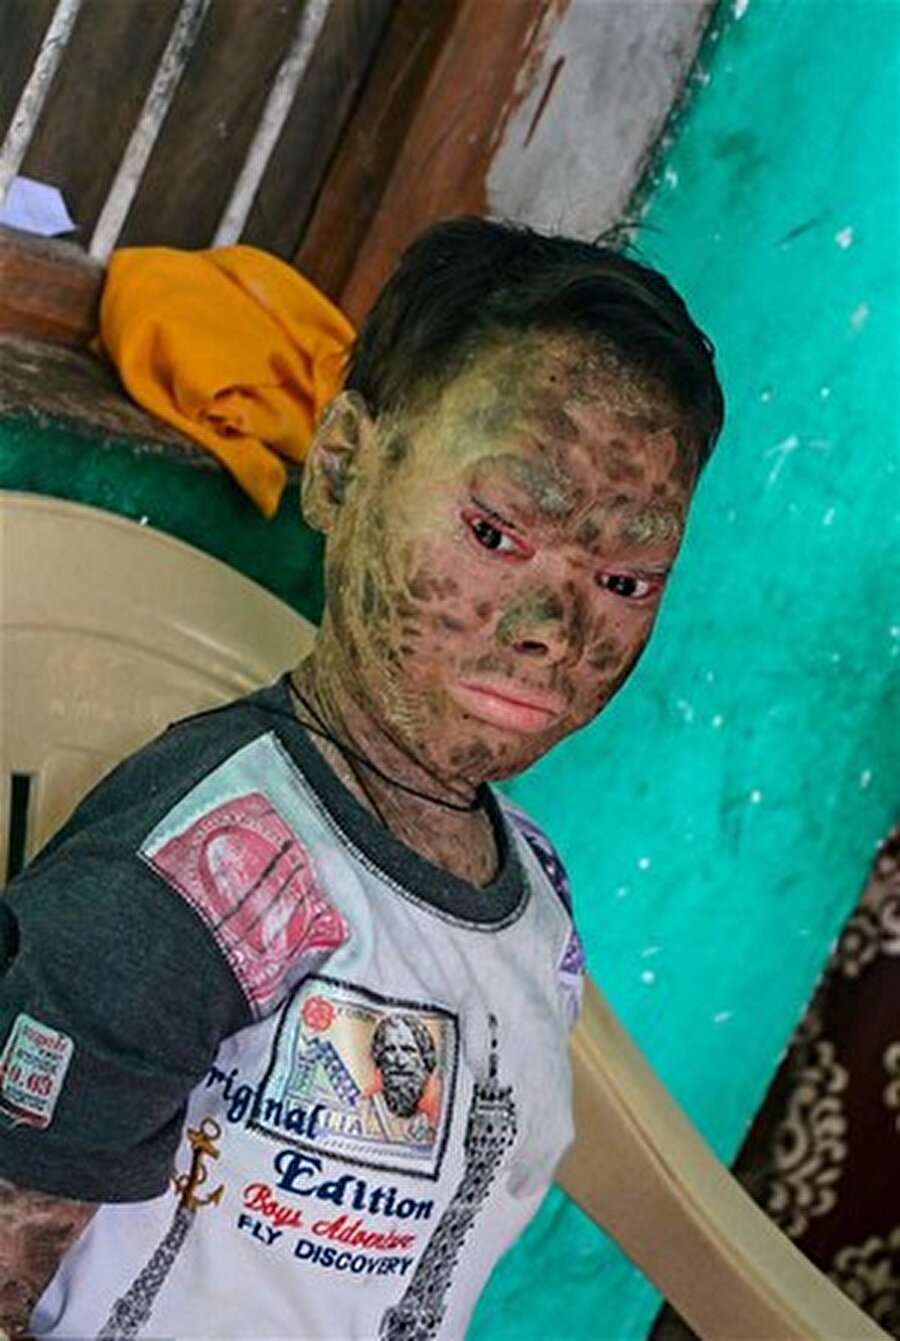 Hindistan'da yaşayan 16 yaşındaki Shalini Yadav isimli genç kız, 'eritroderma' denen hastalığın en ileri safhalarına gelmiş durumda. 'Yılan kız' olarak anılan kız, insan içine çıkamıyordu.

                                    
                                    
                                    
                                    
                                    
                                    
                                    
                                
                                
                                
                                
                                
                                
                                